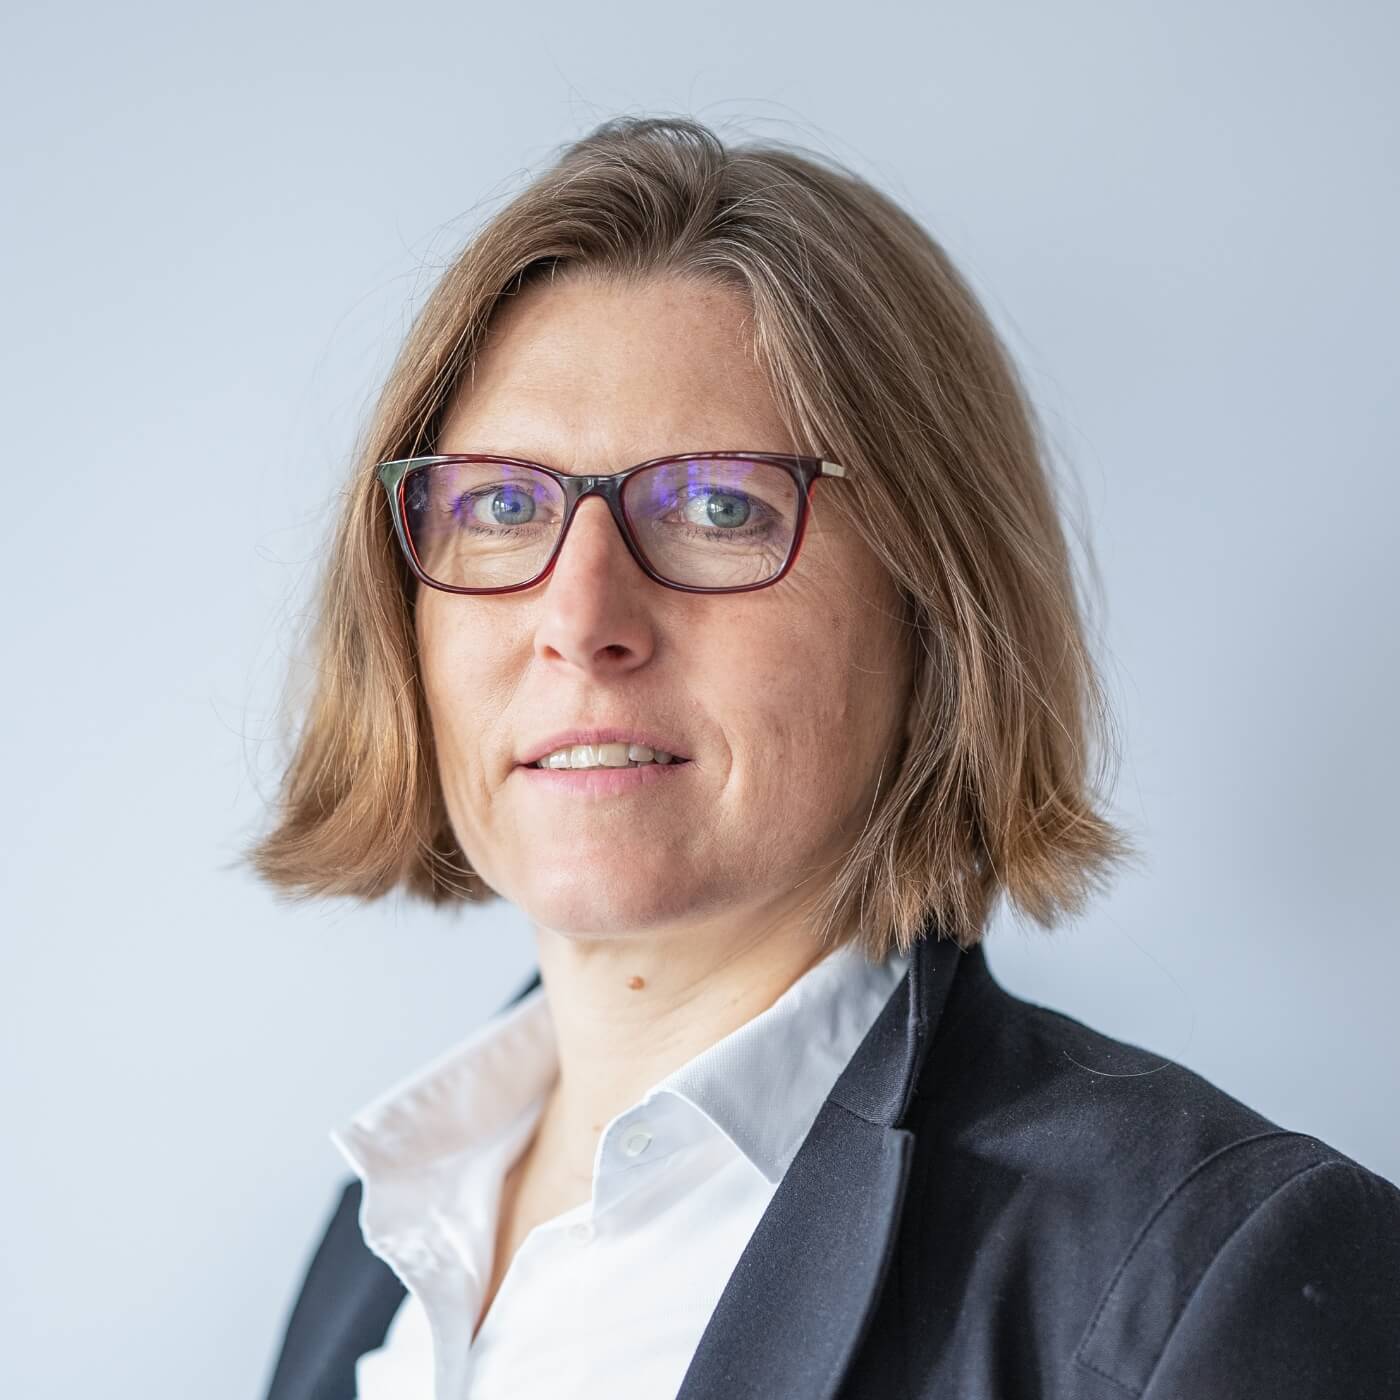 Profilbild des Teammitglieds Karin Seifert-Lorenz